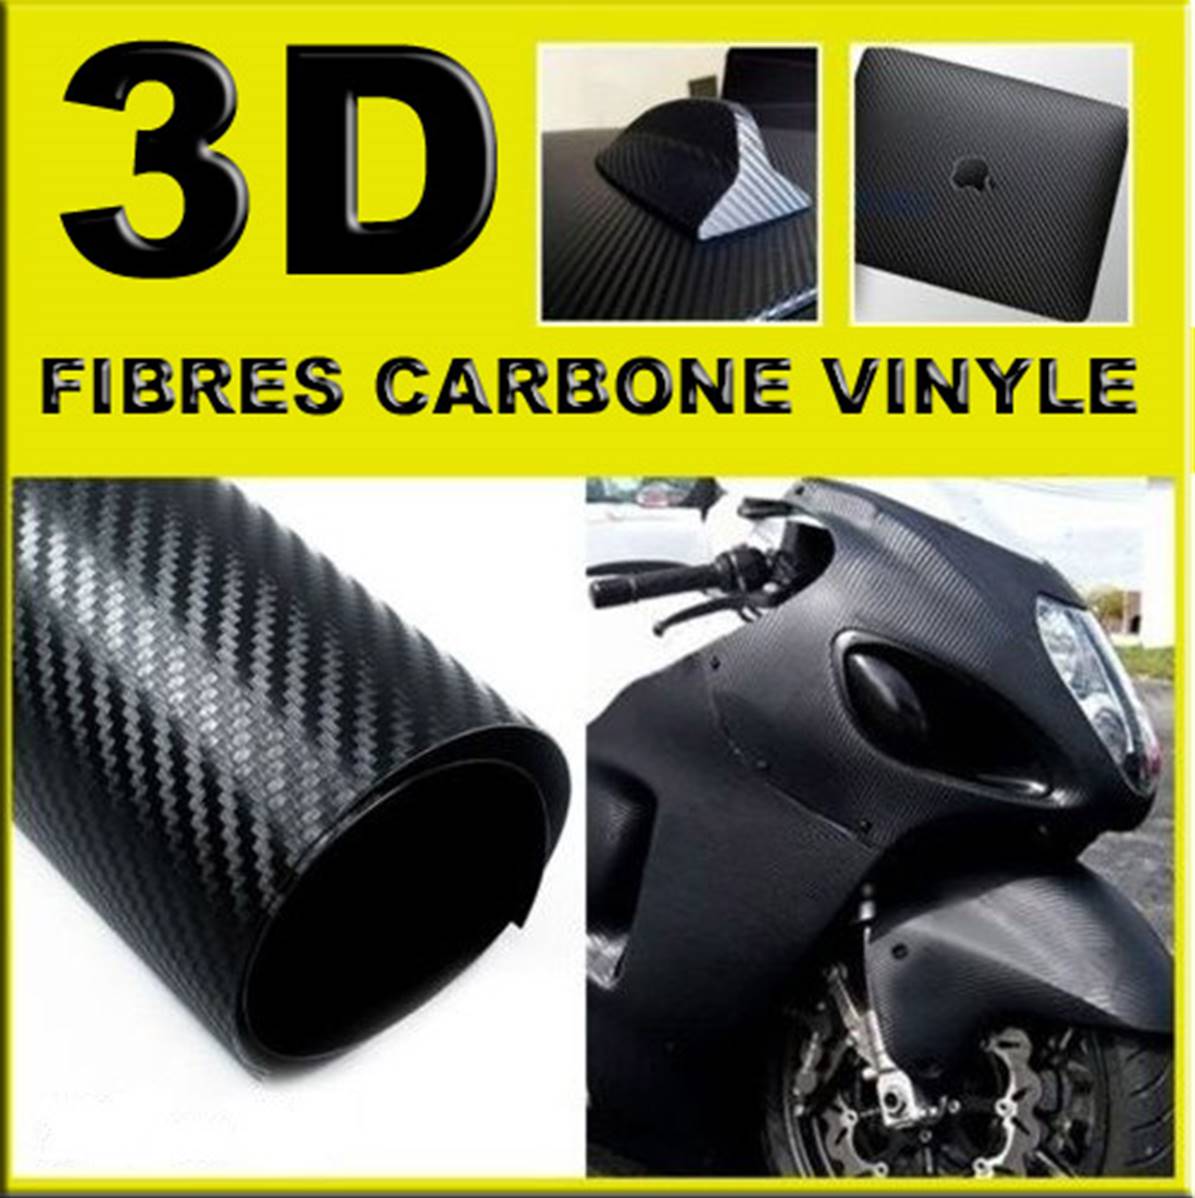 Carbone 3D, Covering, film adhésif Auto / Moto / Déco, Meuble à -50%